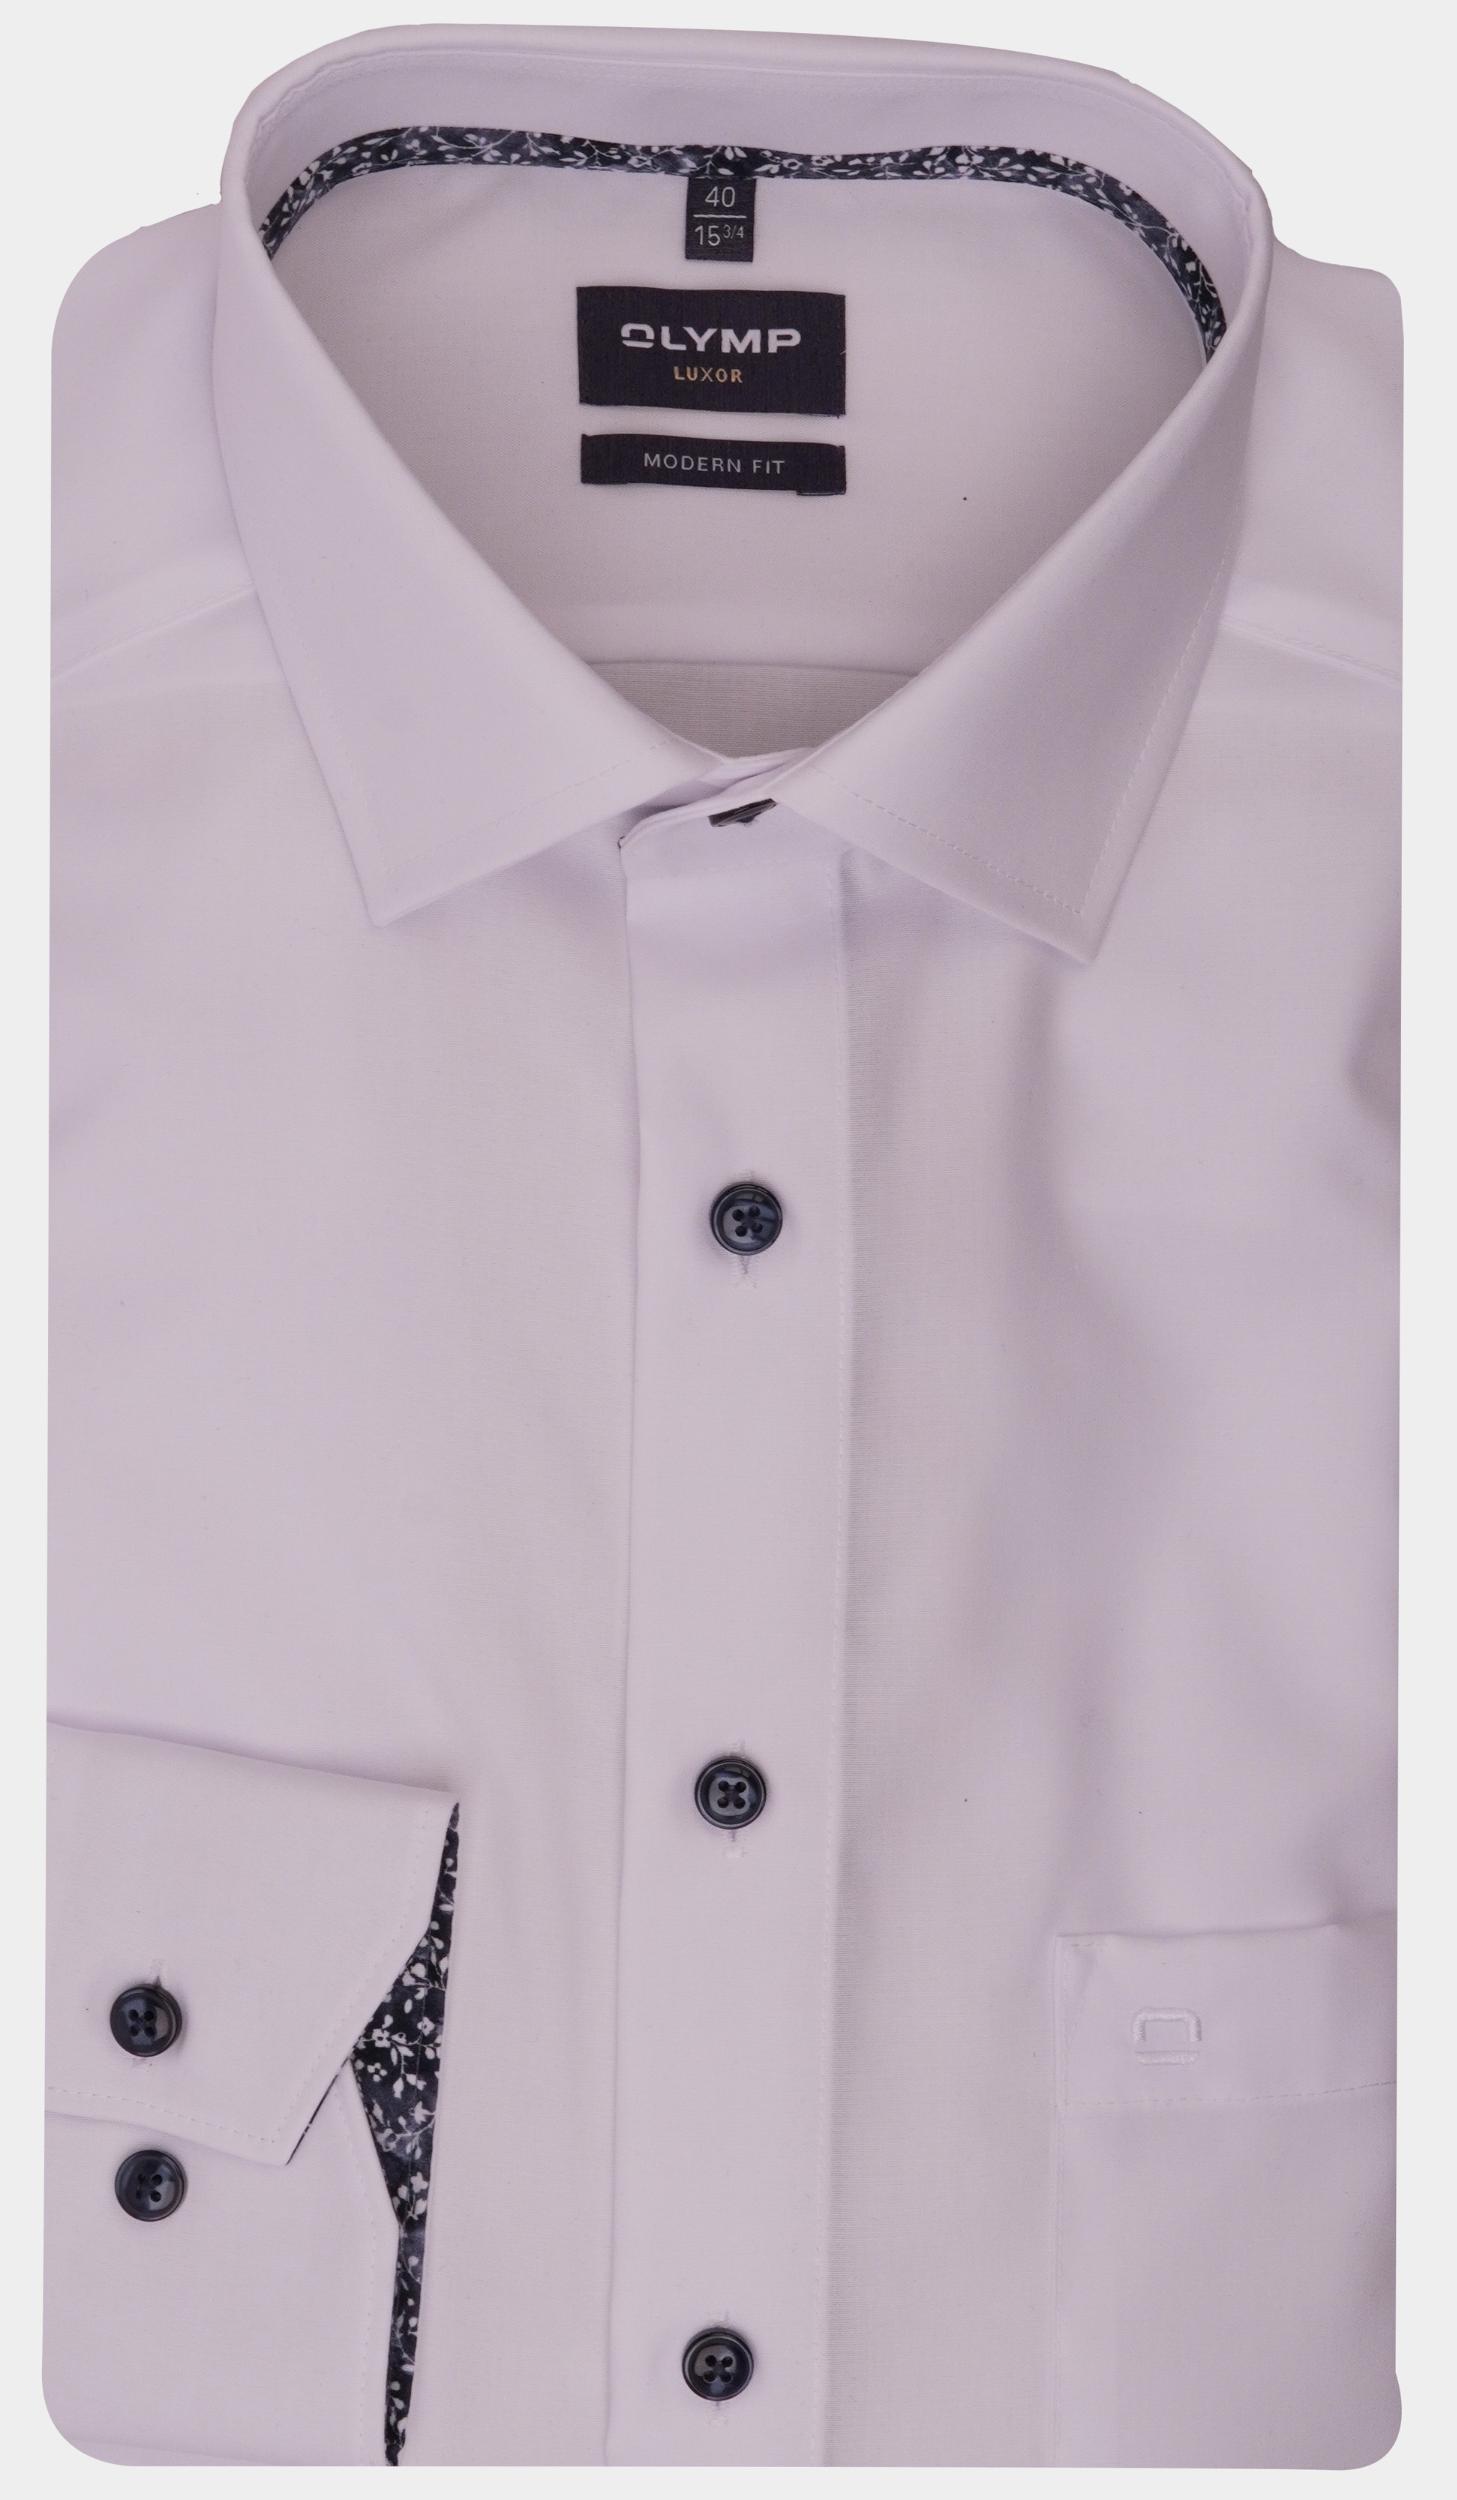 Olymp Business hemd lange mouw Wit 120464-Hemden 120464/00